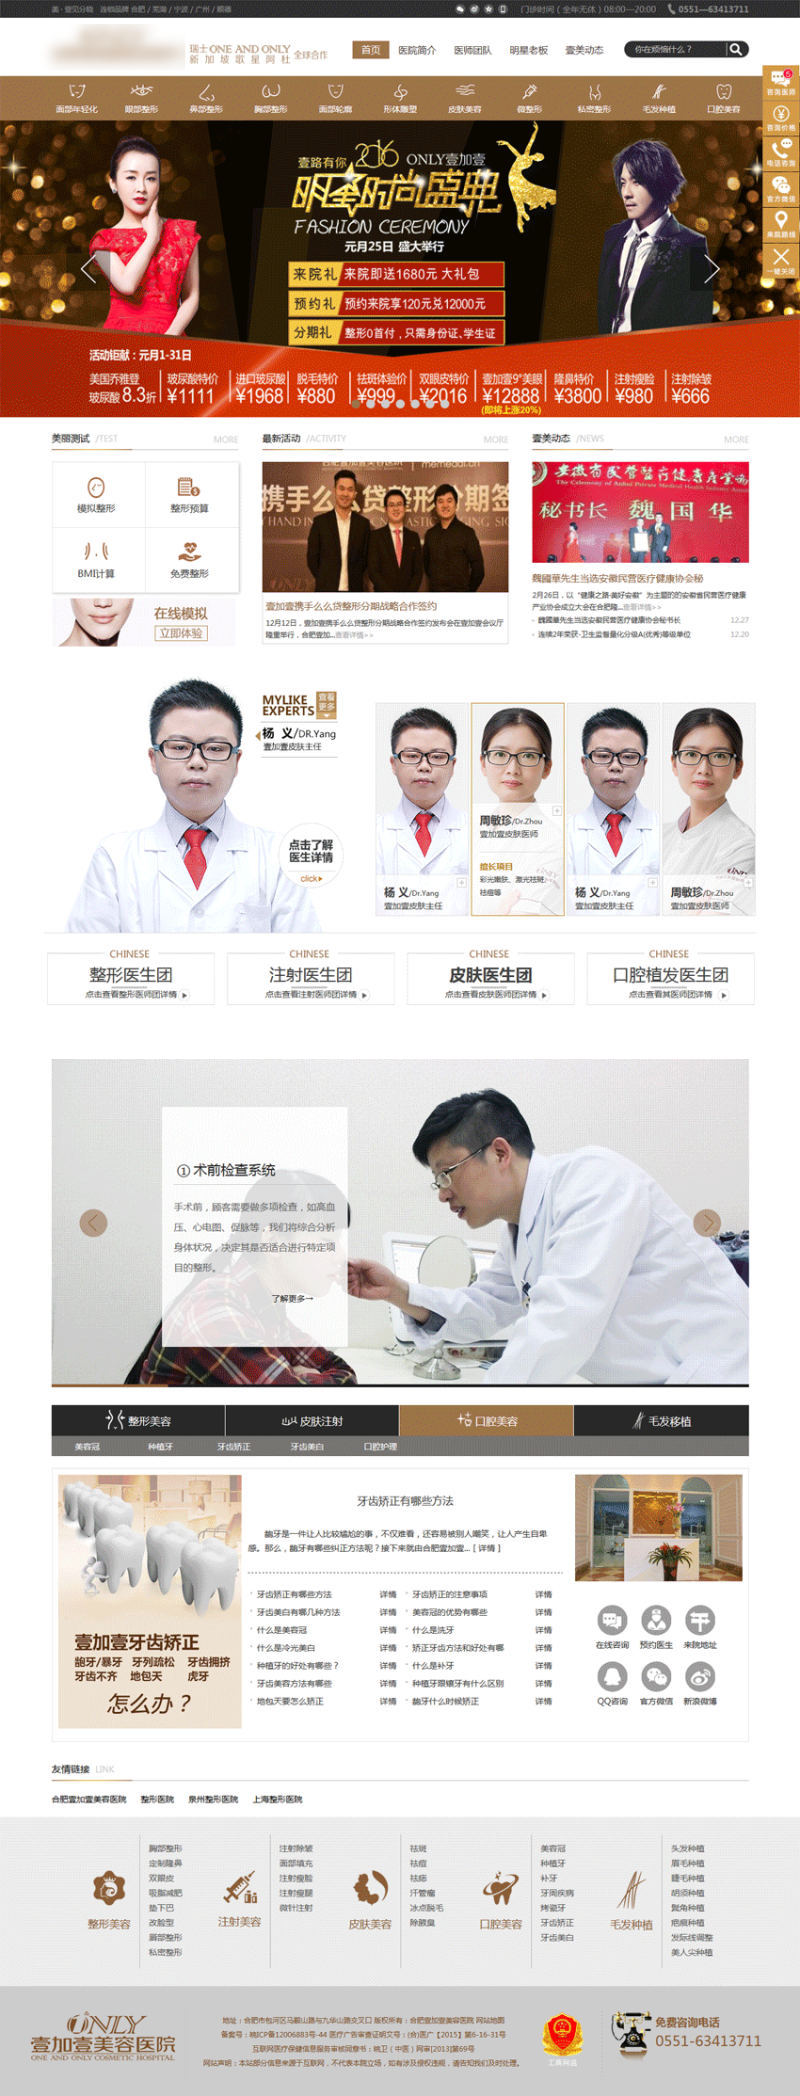 金黄色的美容医院企业网站html整站模板